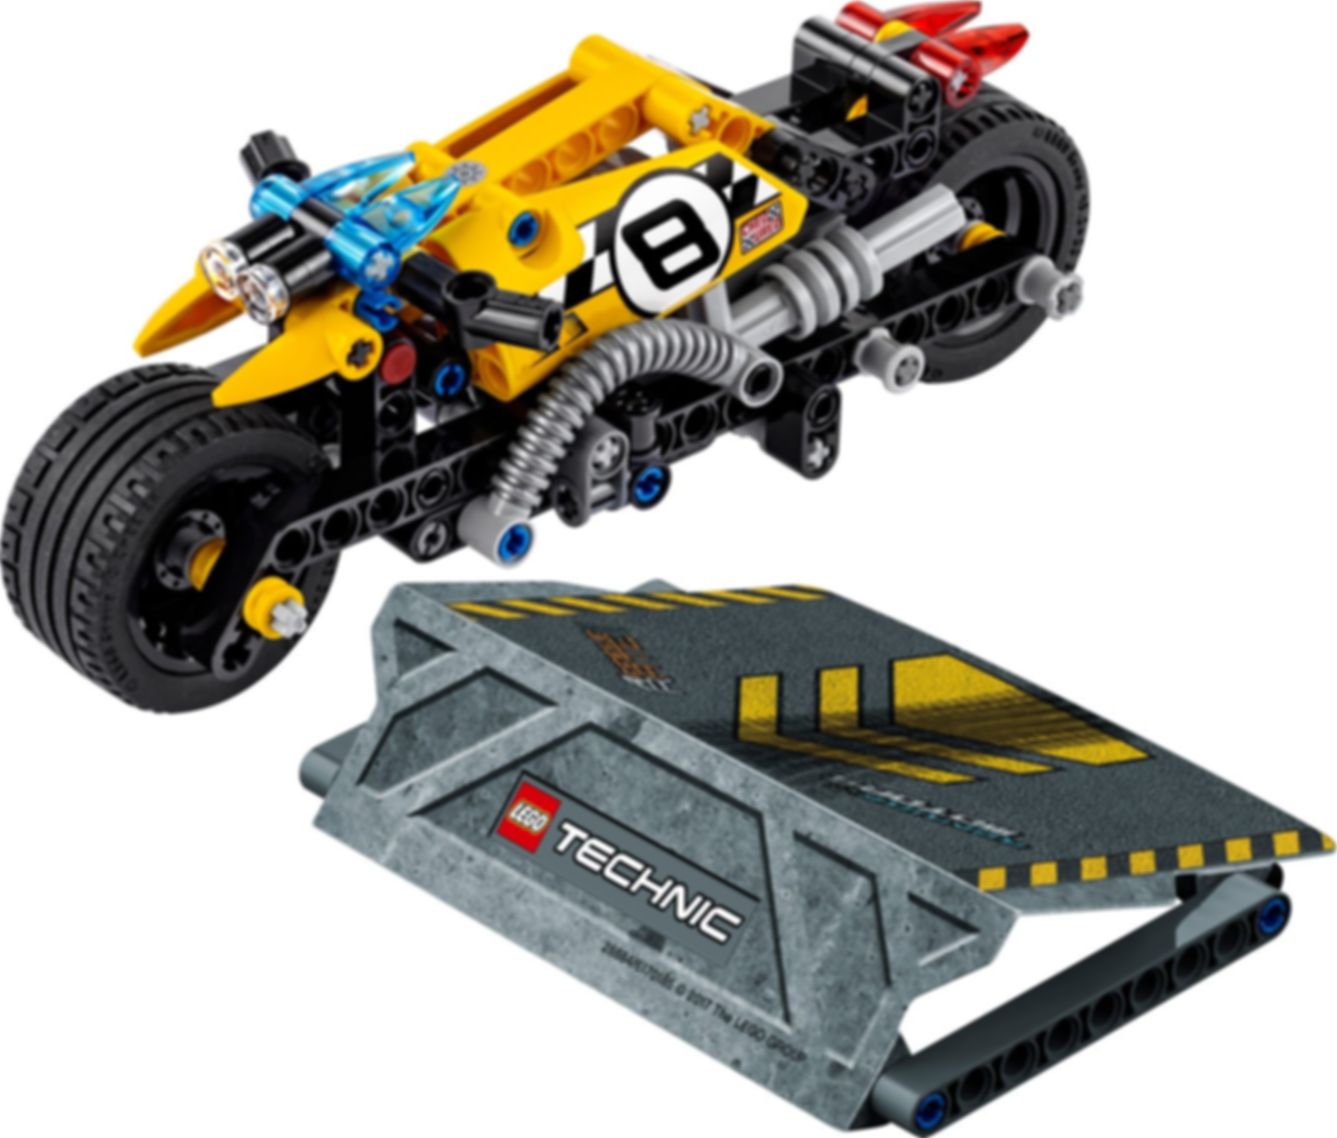 LEGO® Technic Stunt Bike componenti